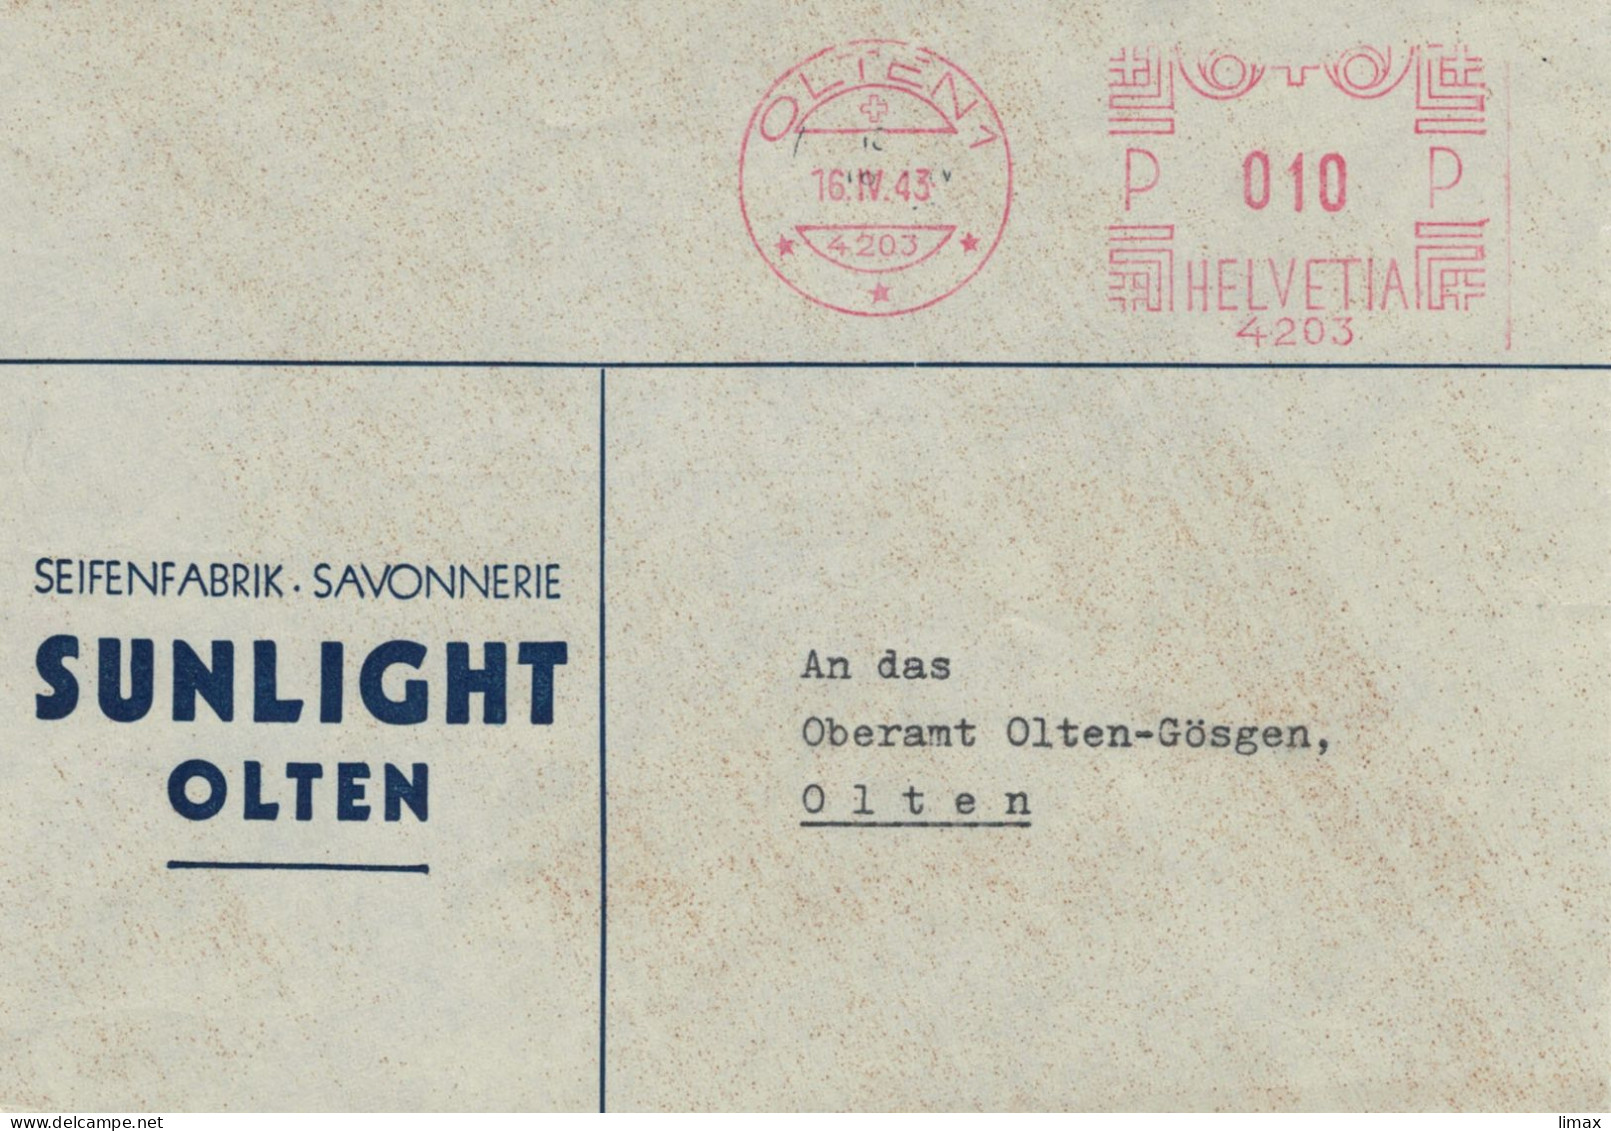 Seifenfabrik Savonnerie Sunlight Olten 1943 No. 4203 - Ortsbrief - Frankiermaschinen (FraMA)